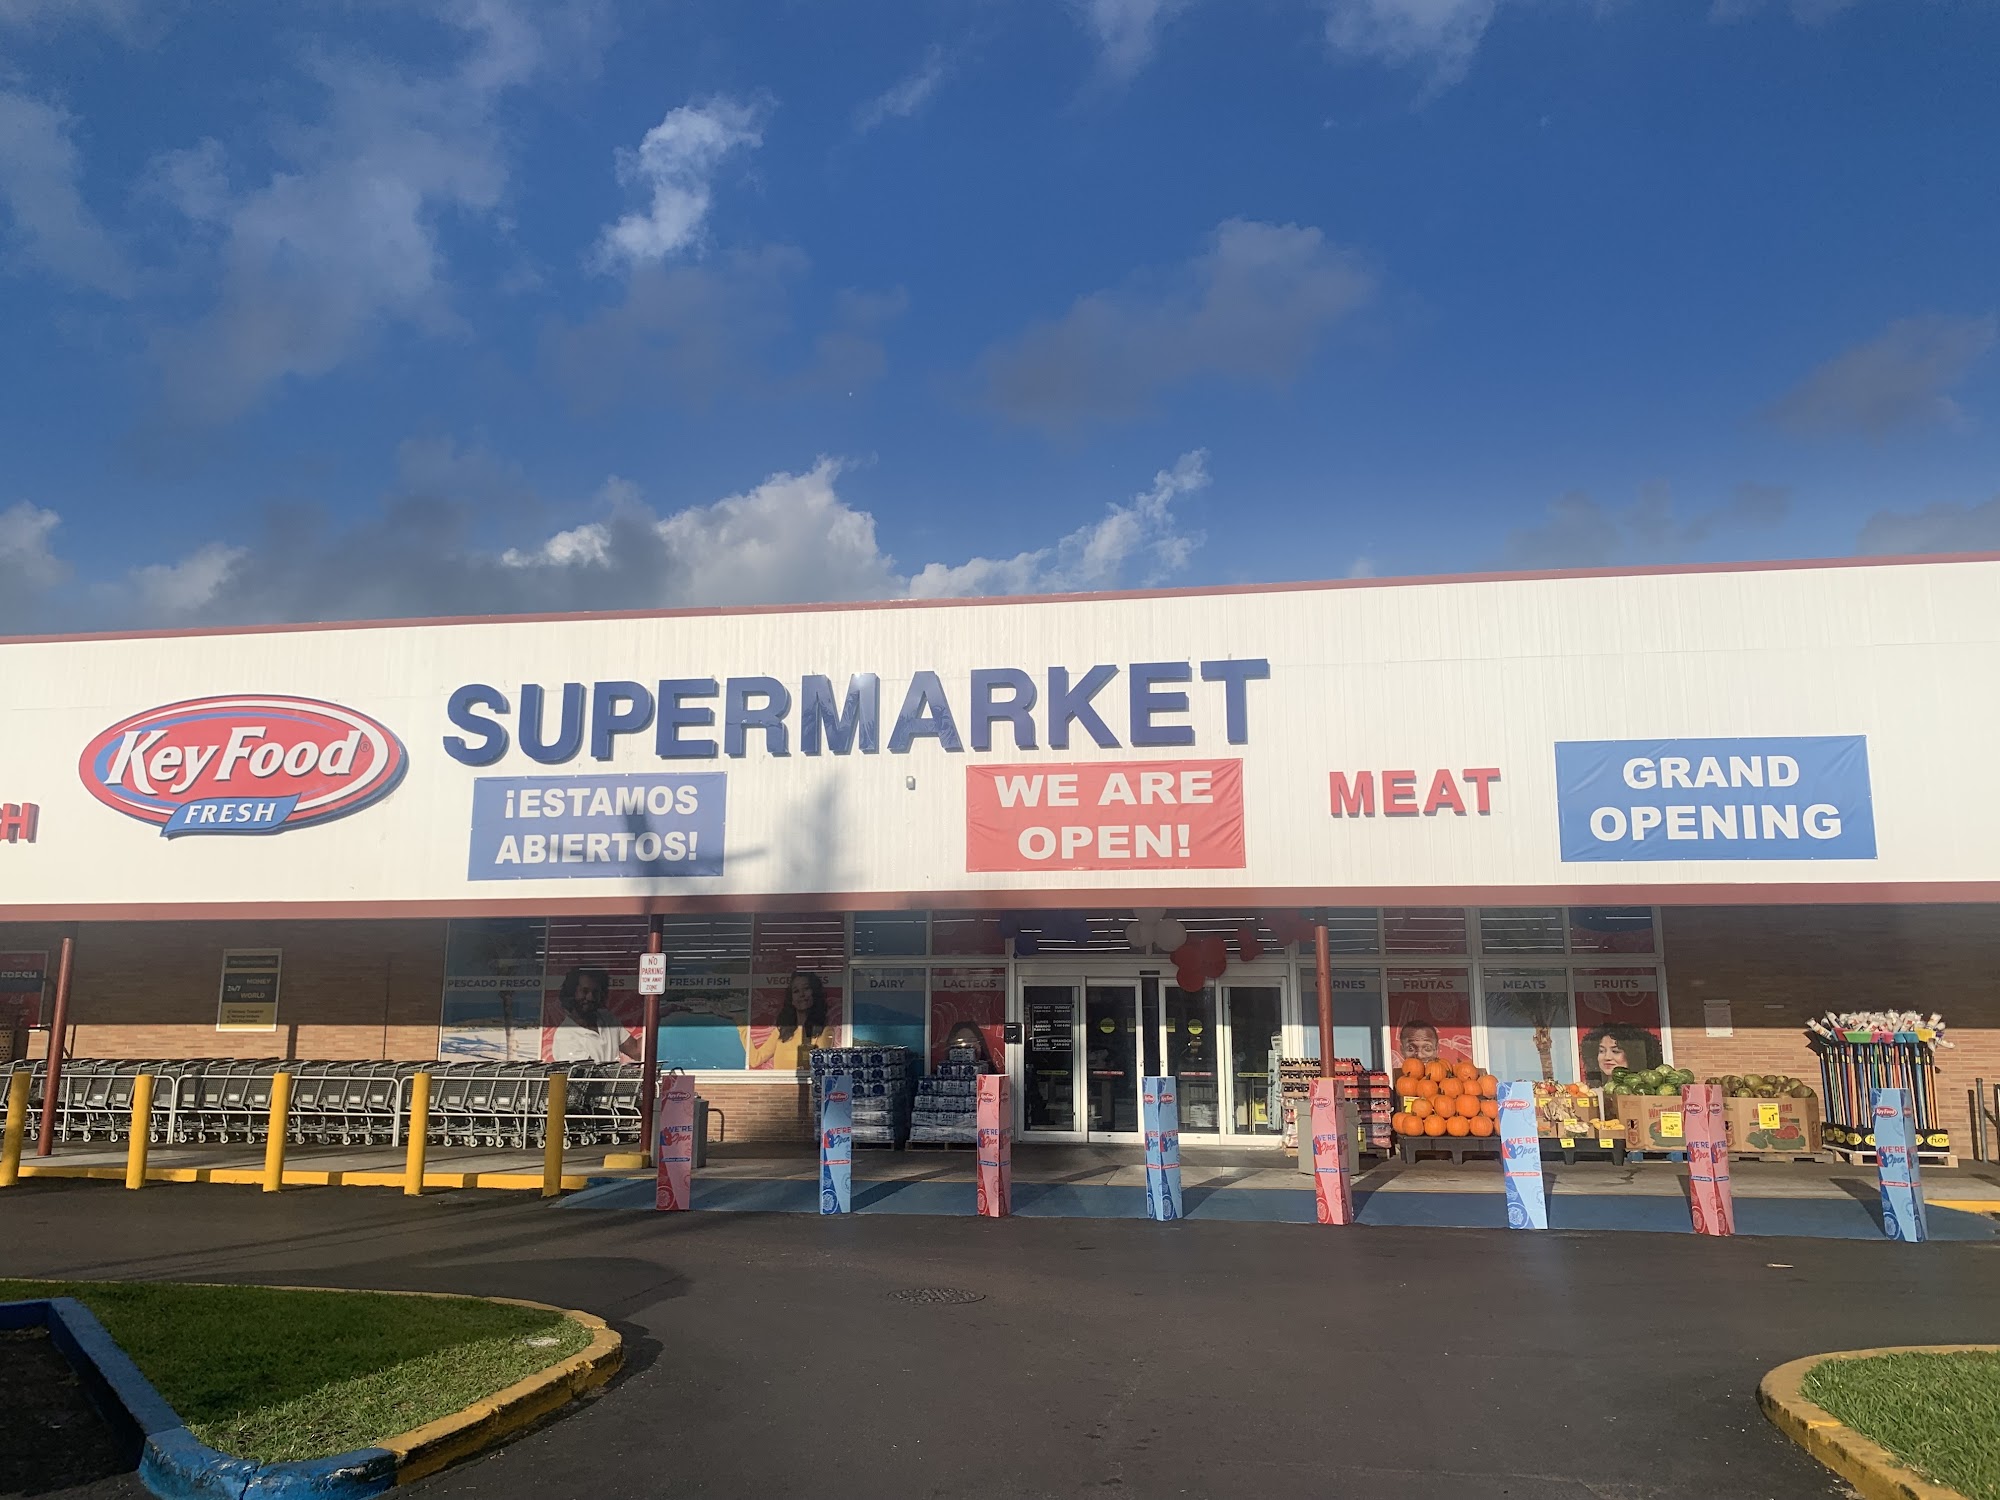 Key Food Supermarket